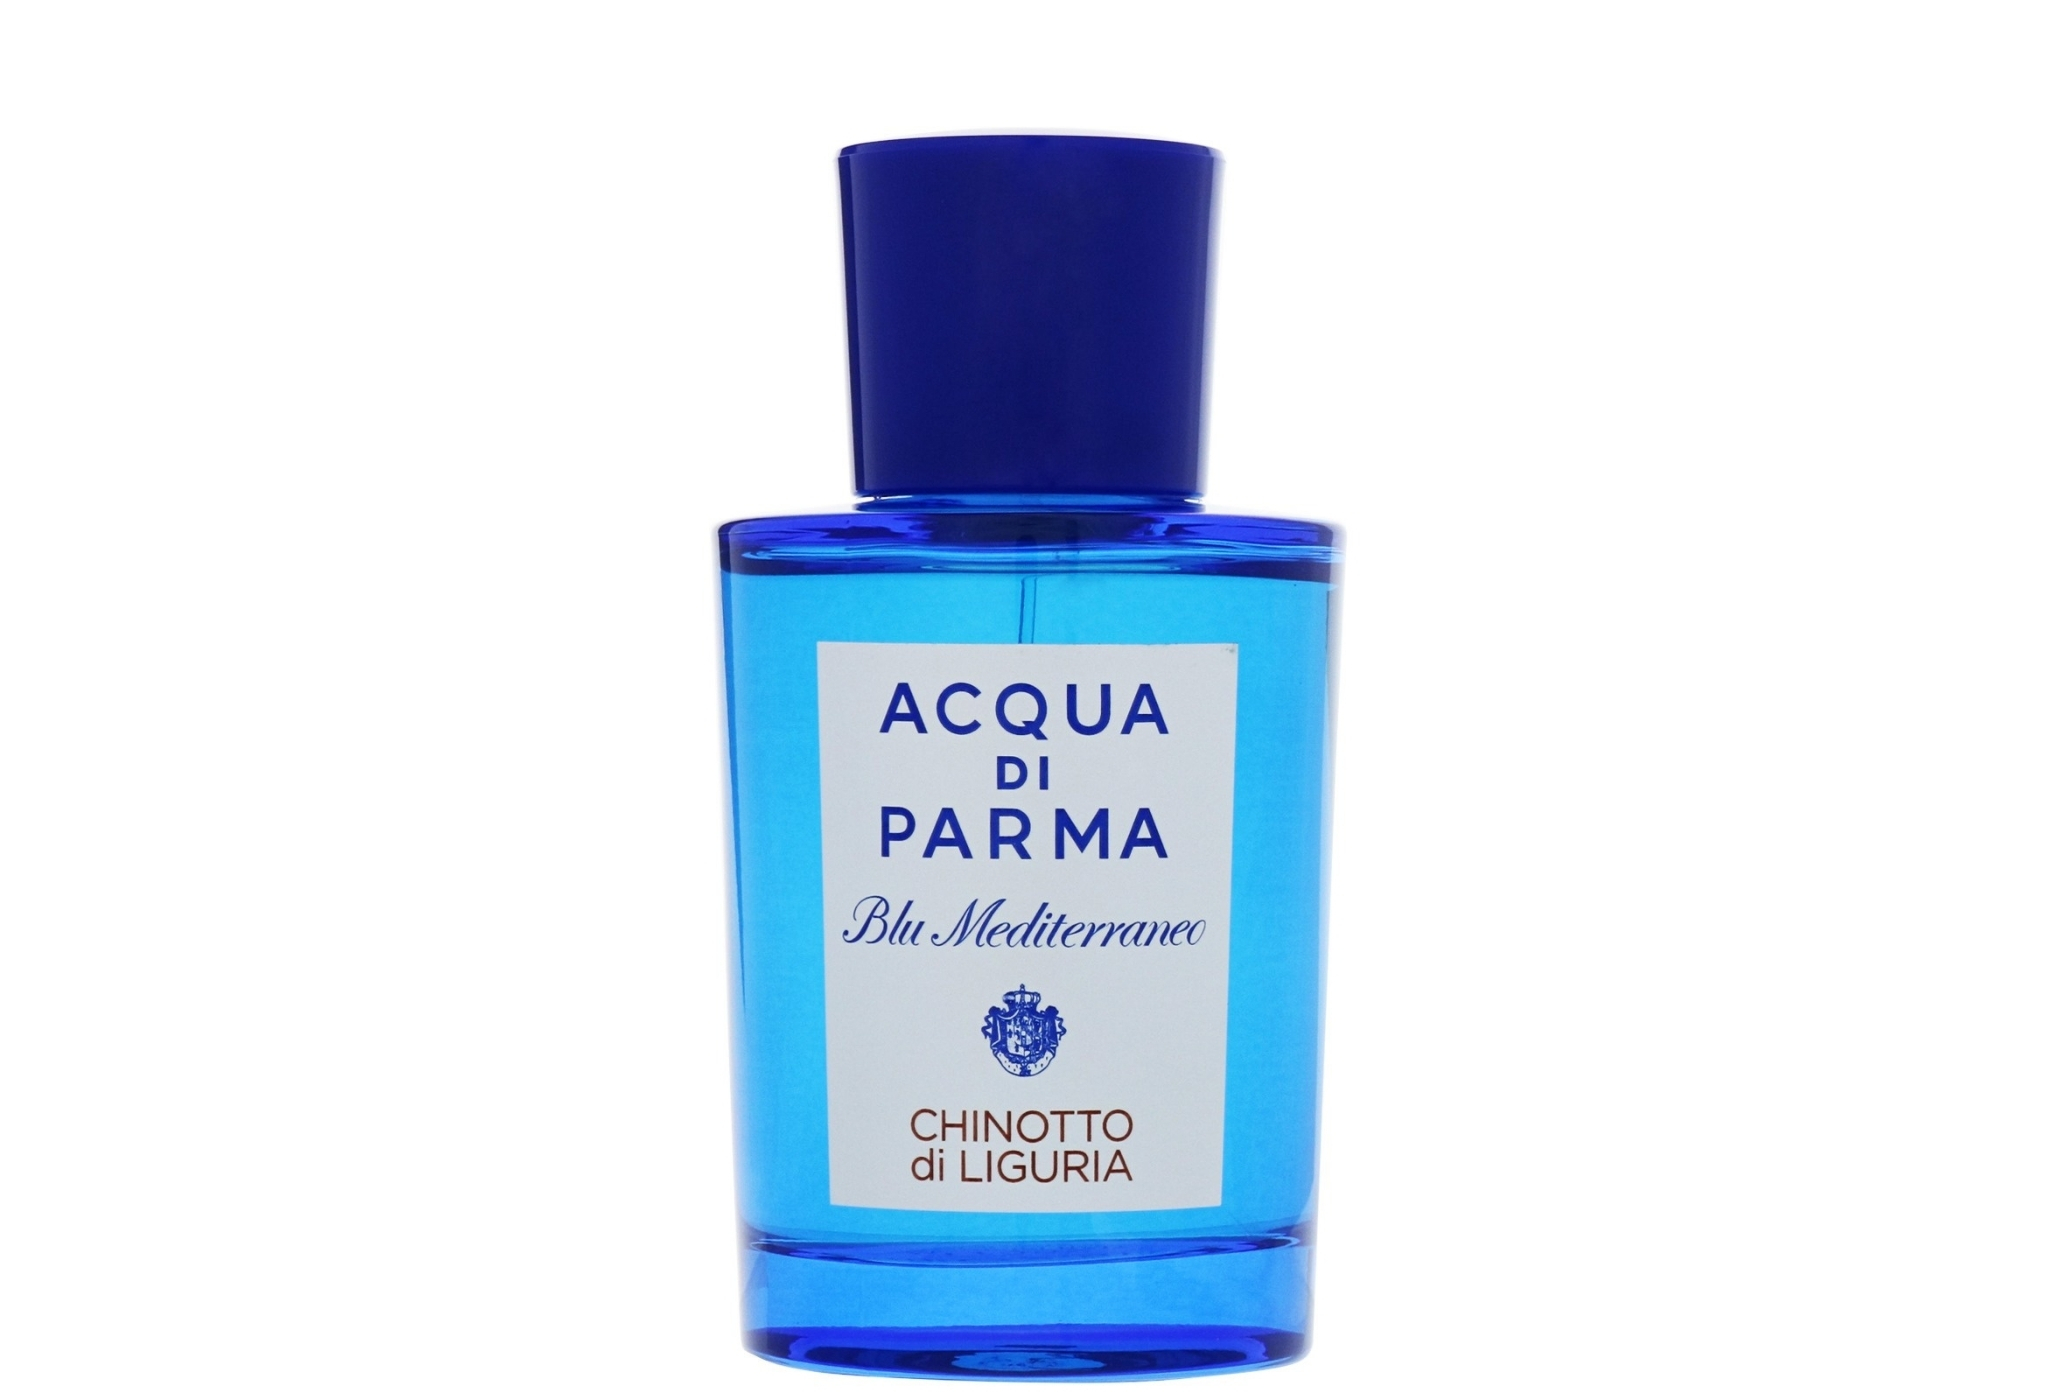 acqua di parma chinotto di liguria - best summer fragrances for men